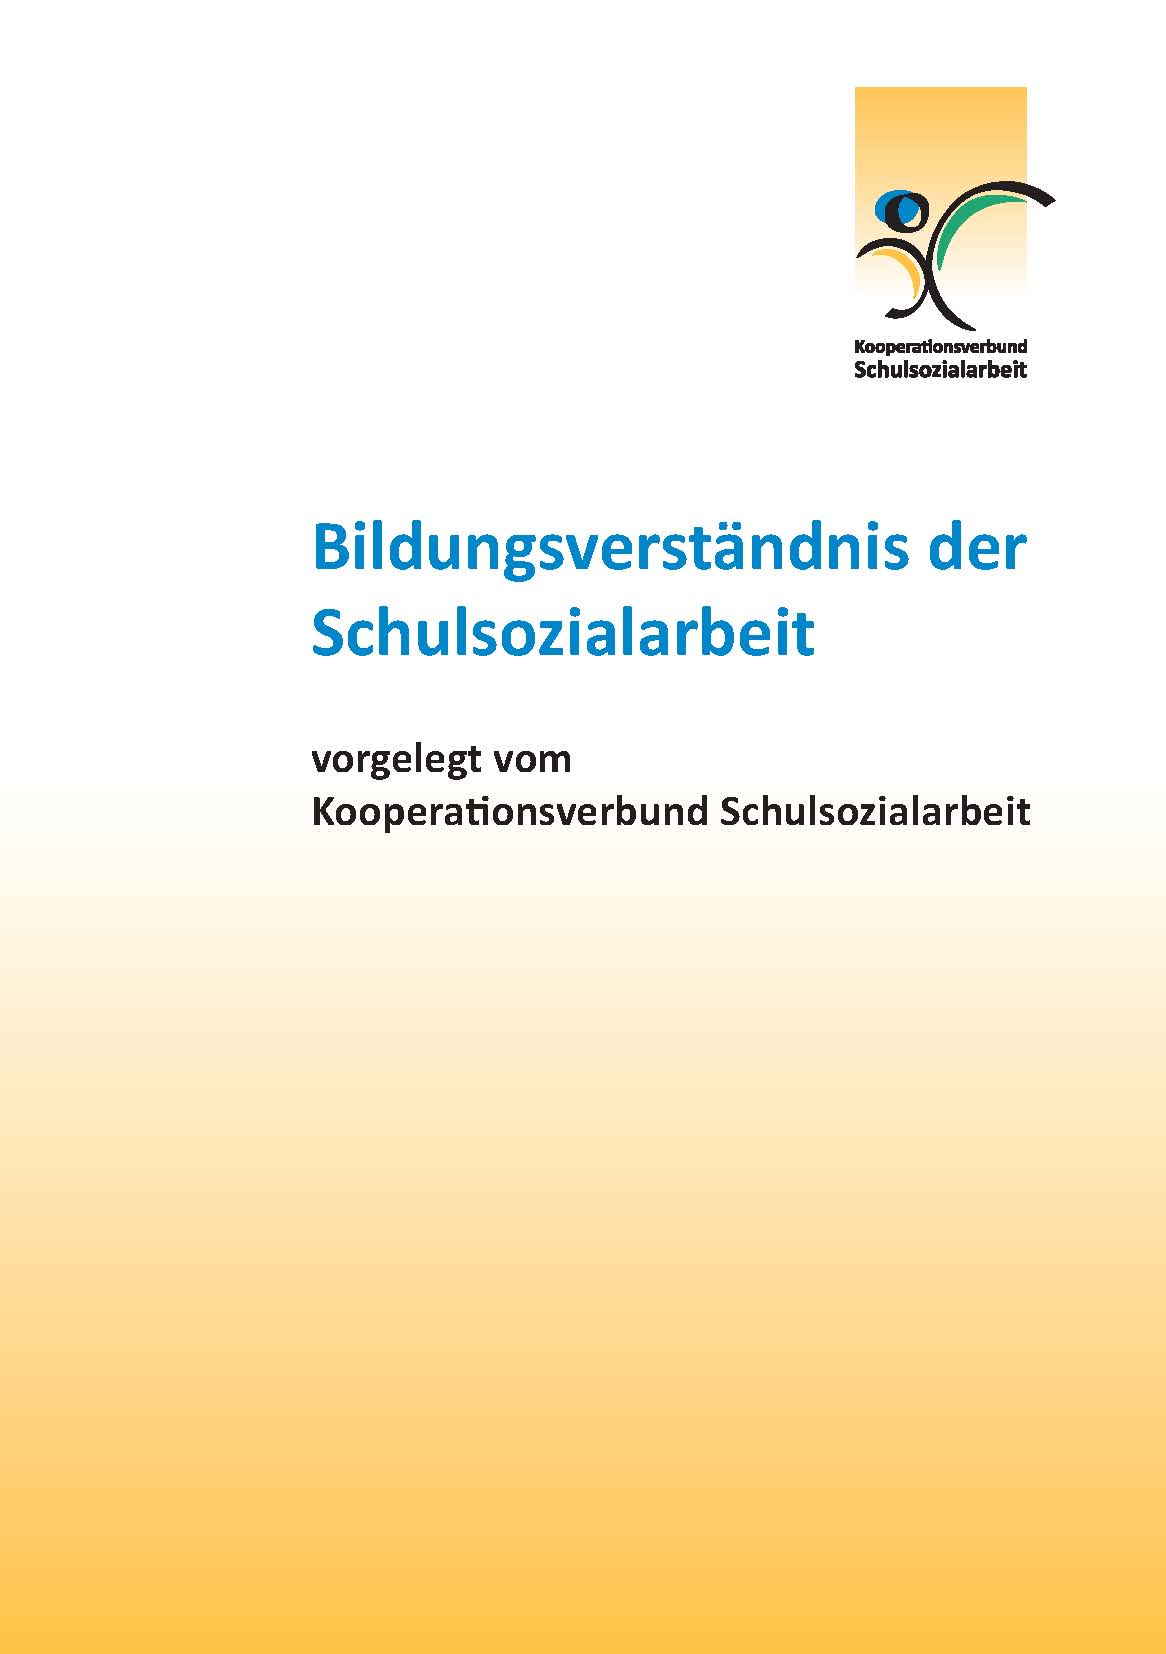 Bildungsverständnis der SSA -Cover- (2013)